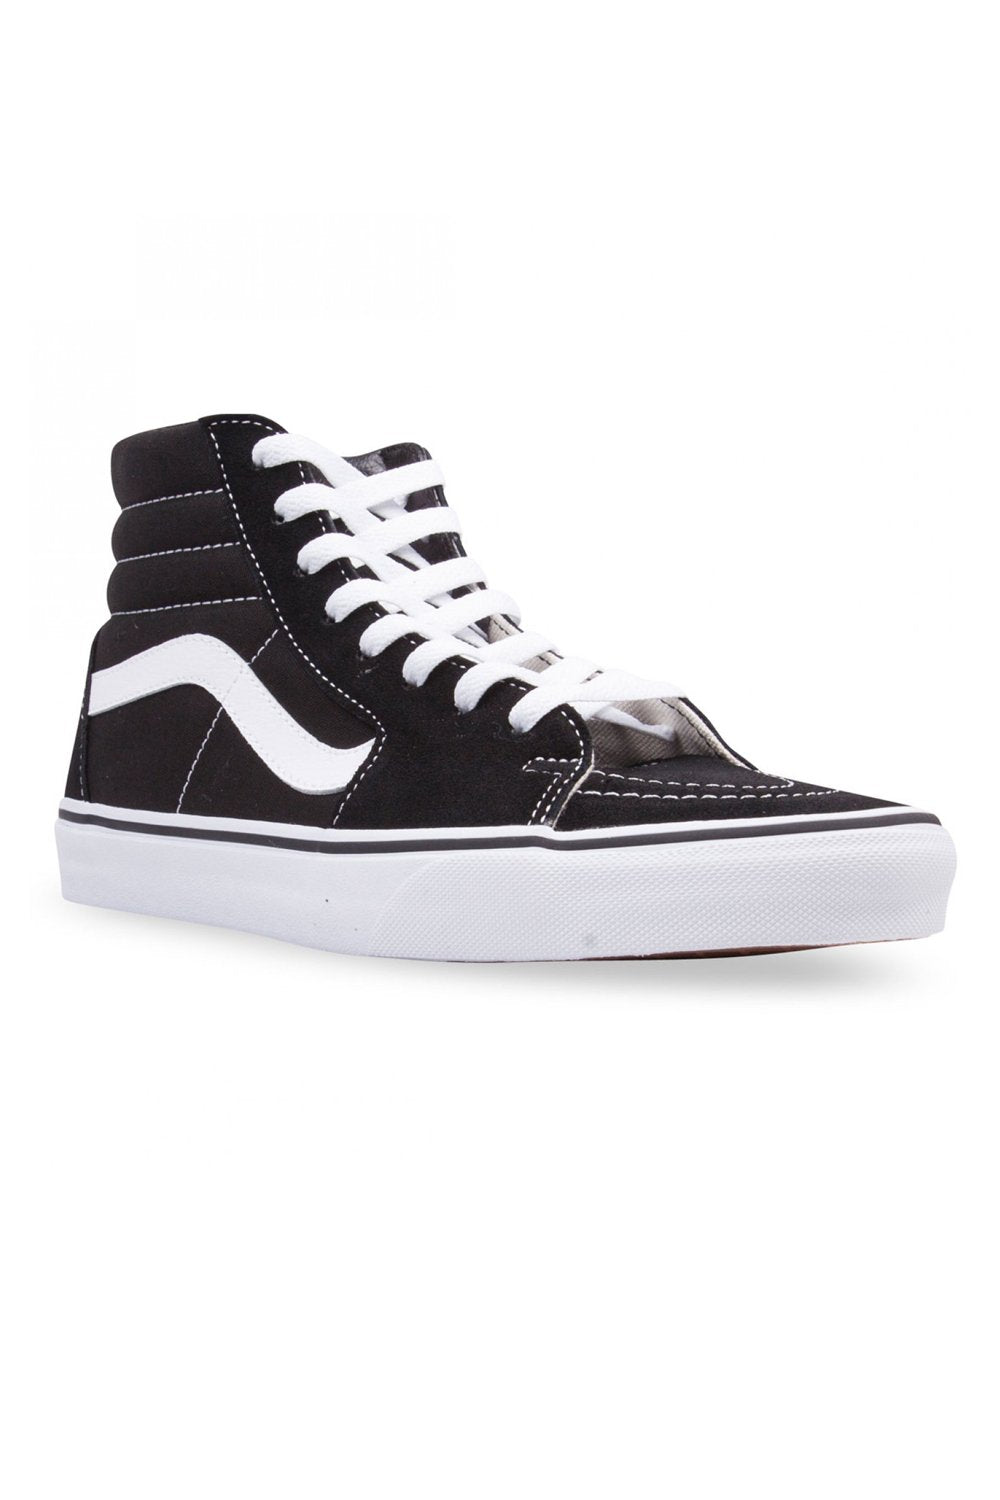 Vans SK8 Hi Black / Black / White Shoe